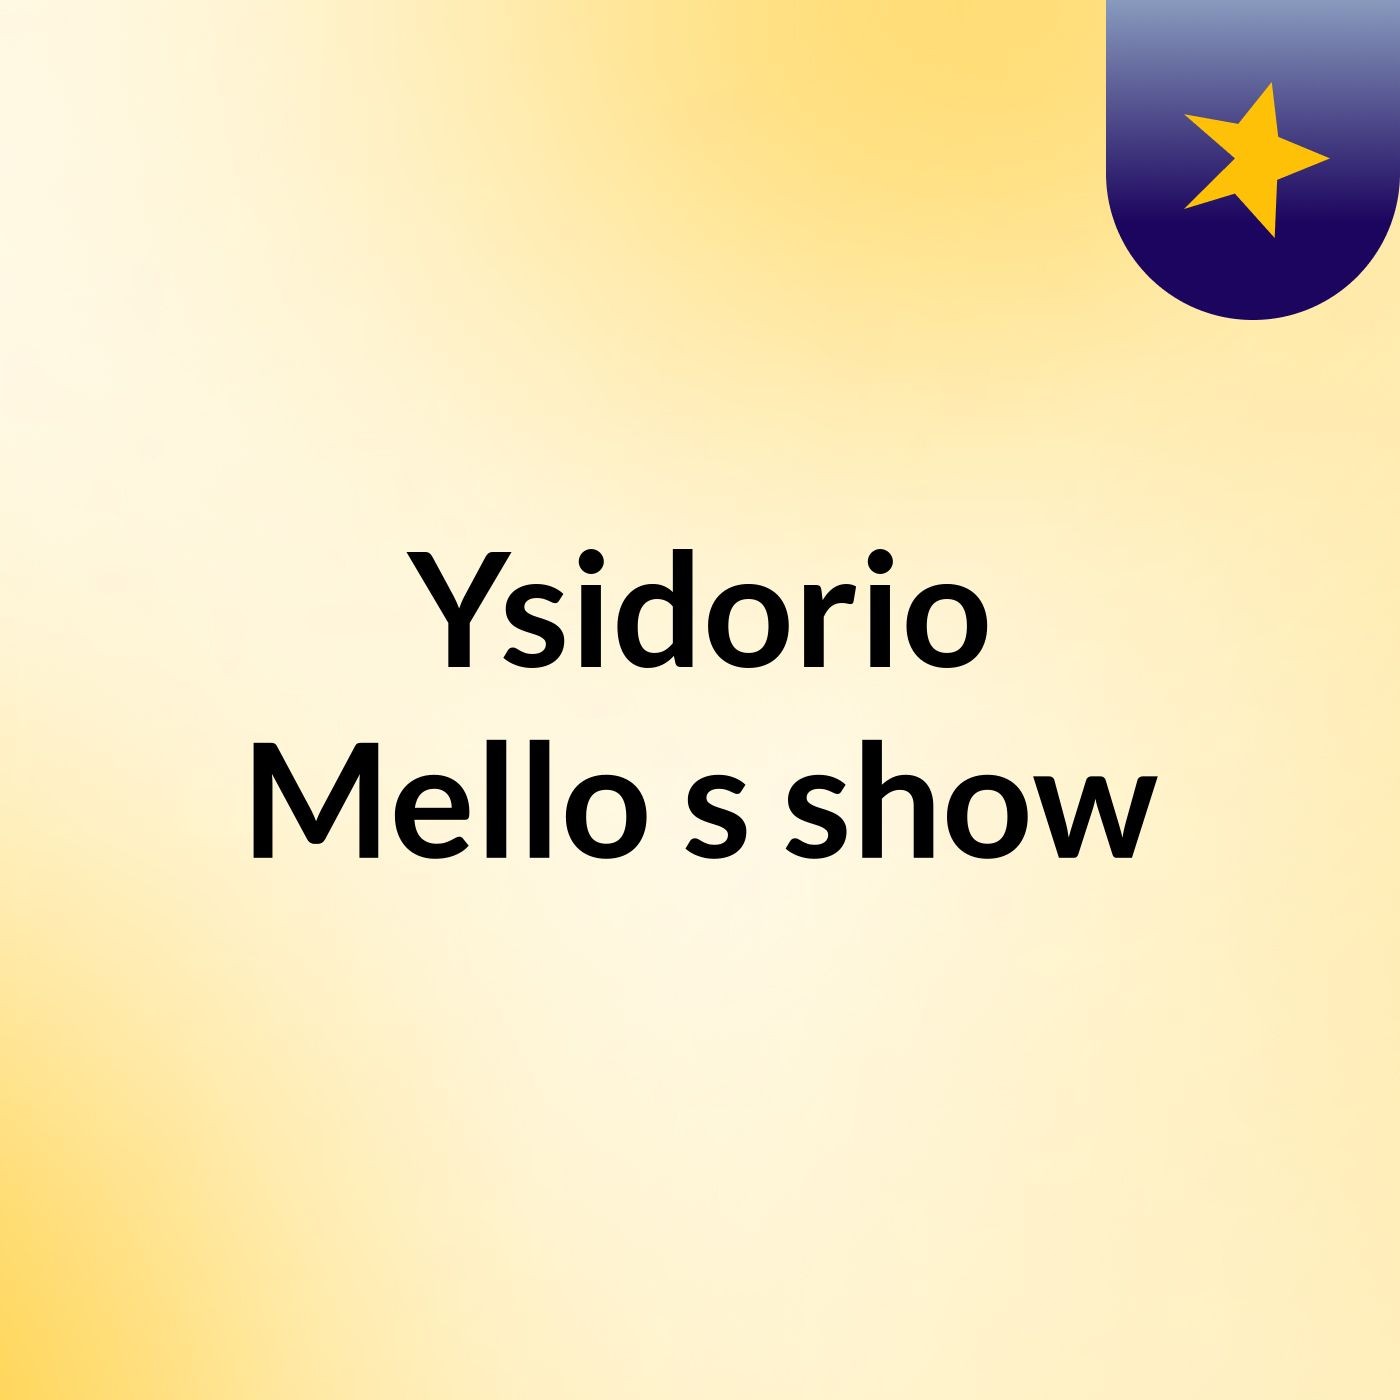 Episódio 5 - Ysidorio Mello's show